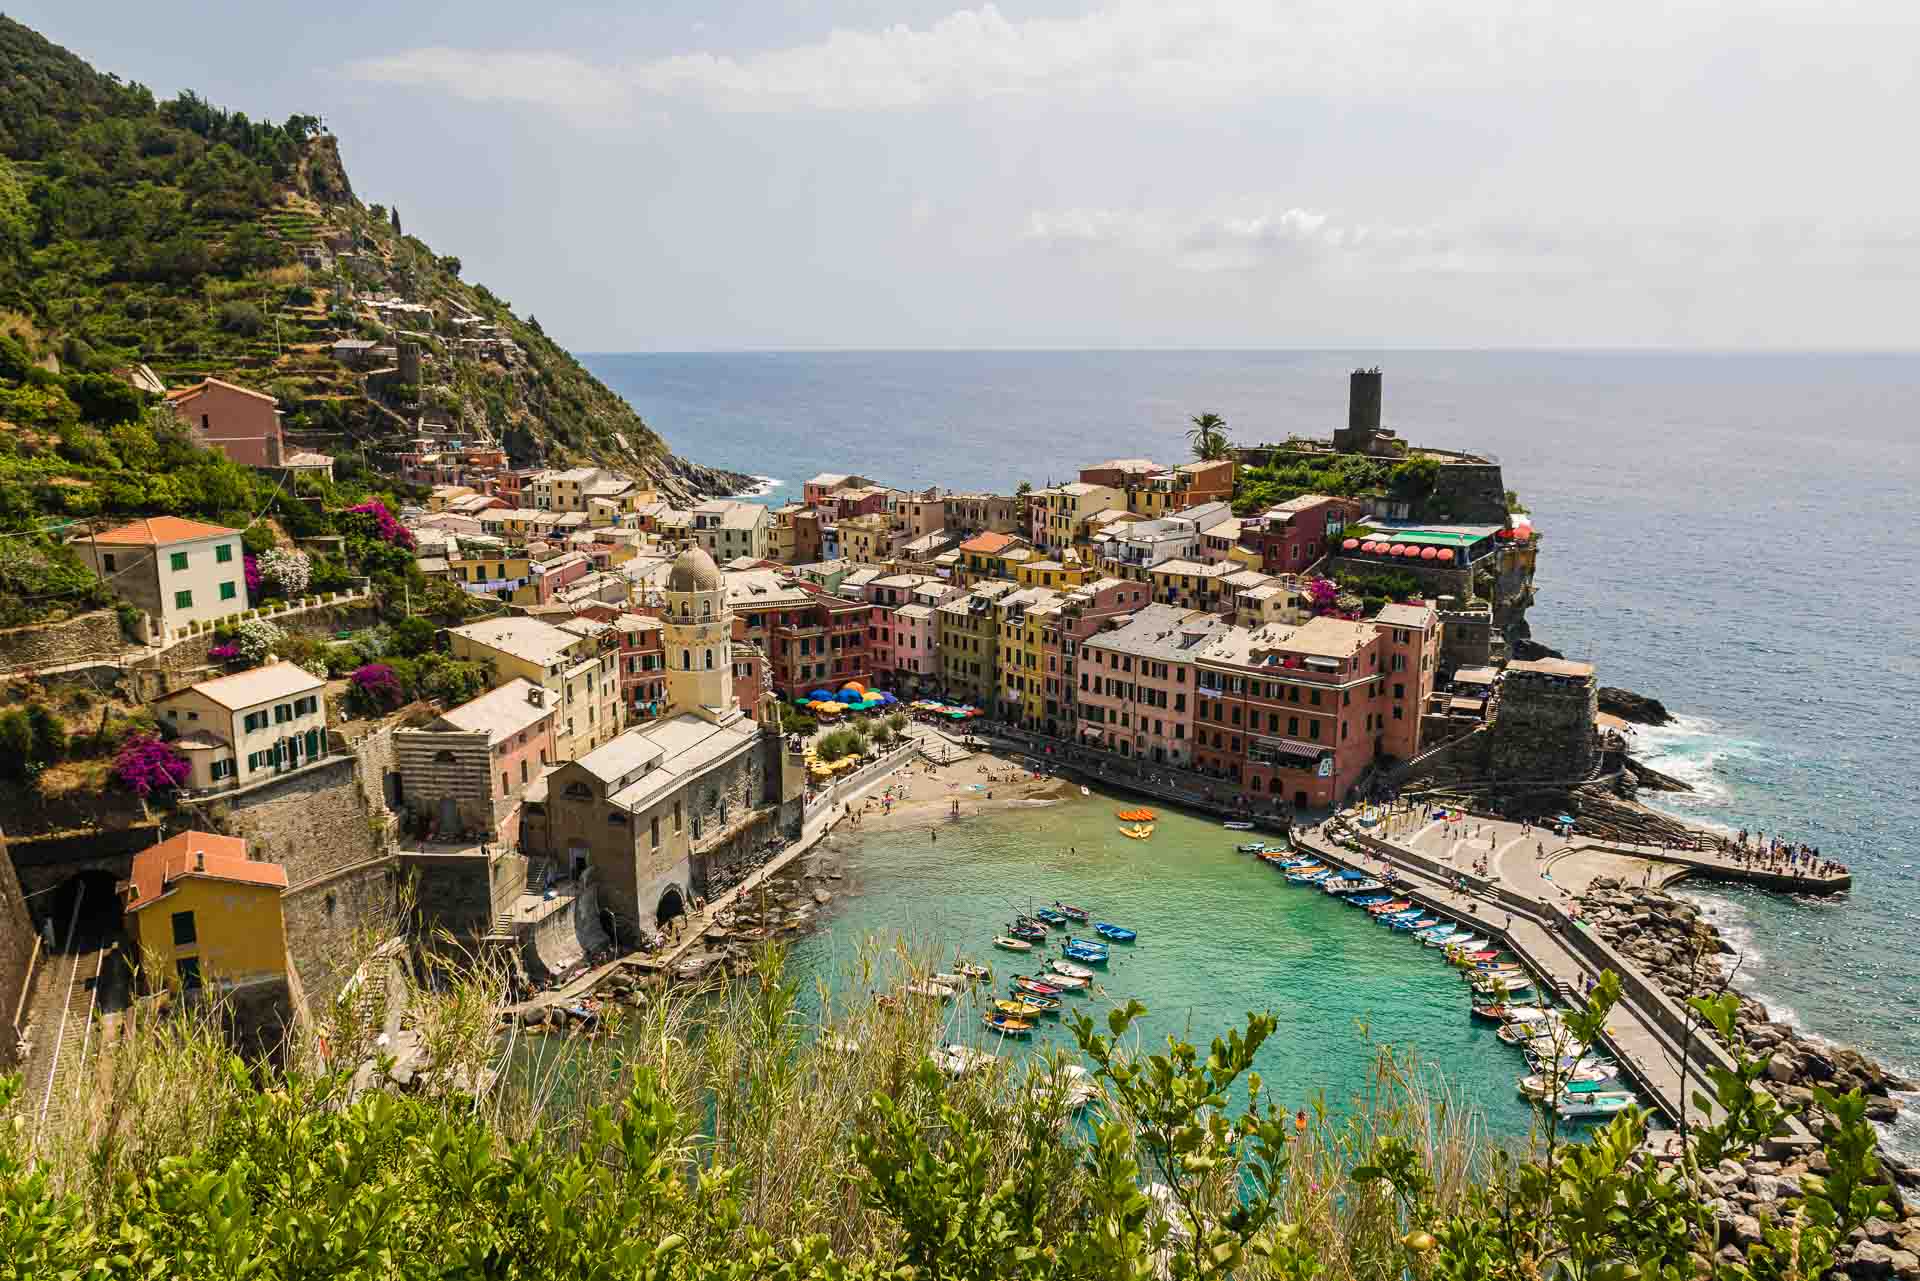 Custo de vida na Itália: qual a melhor cidade para viver? - Wise